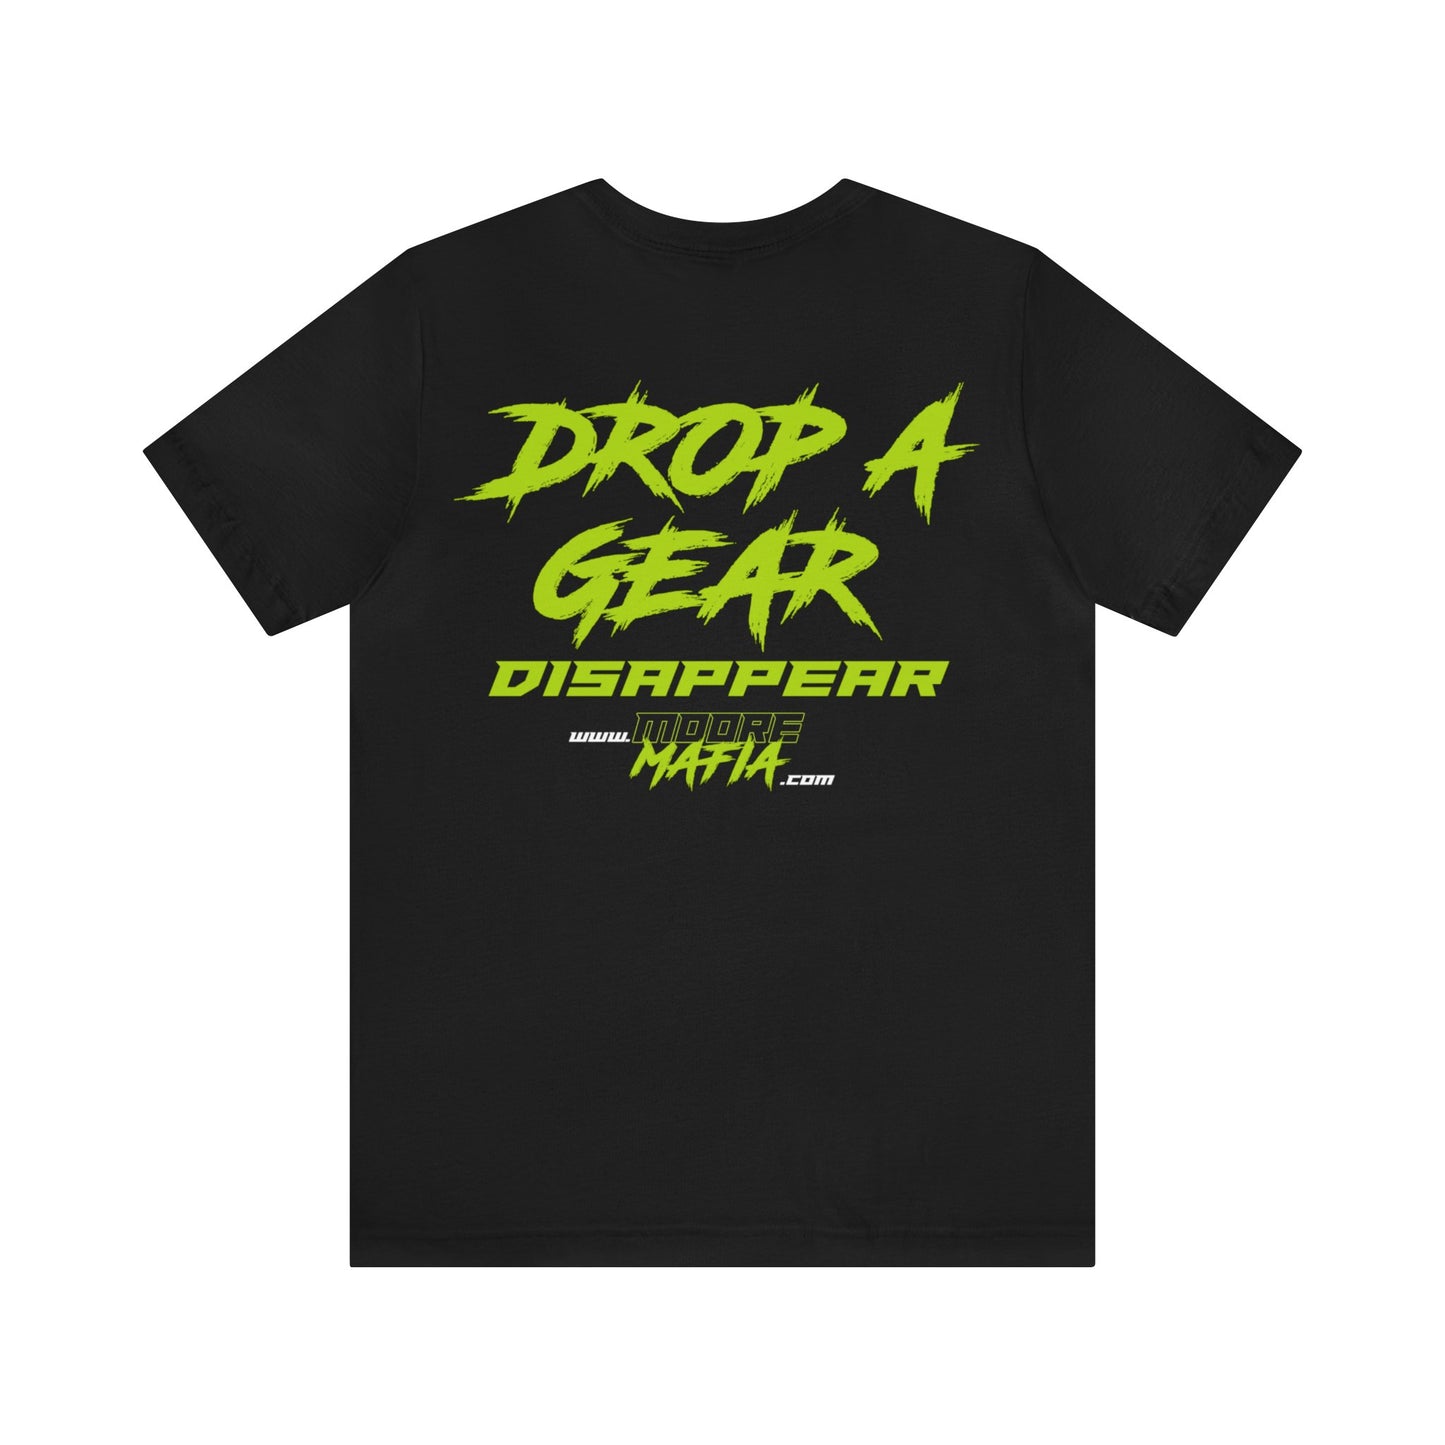 Drop A Gear Disappar Unisex T-Shirt